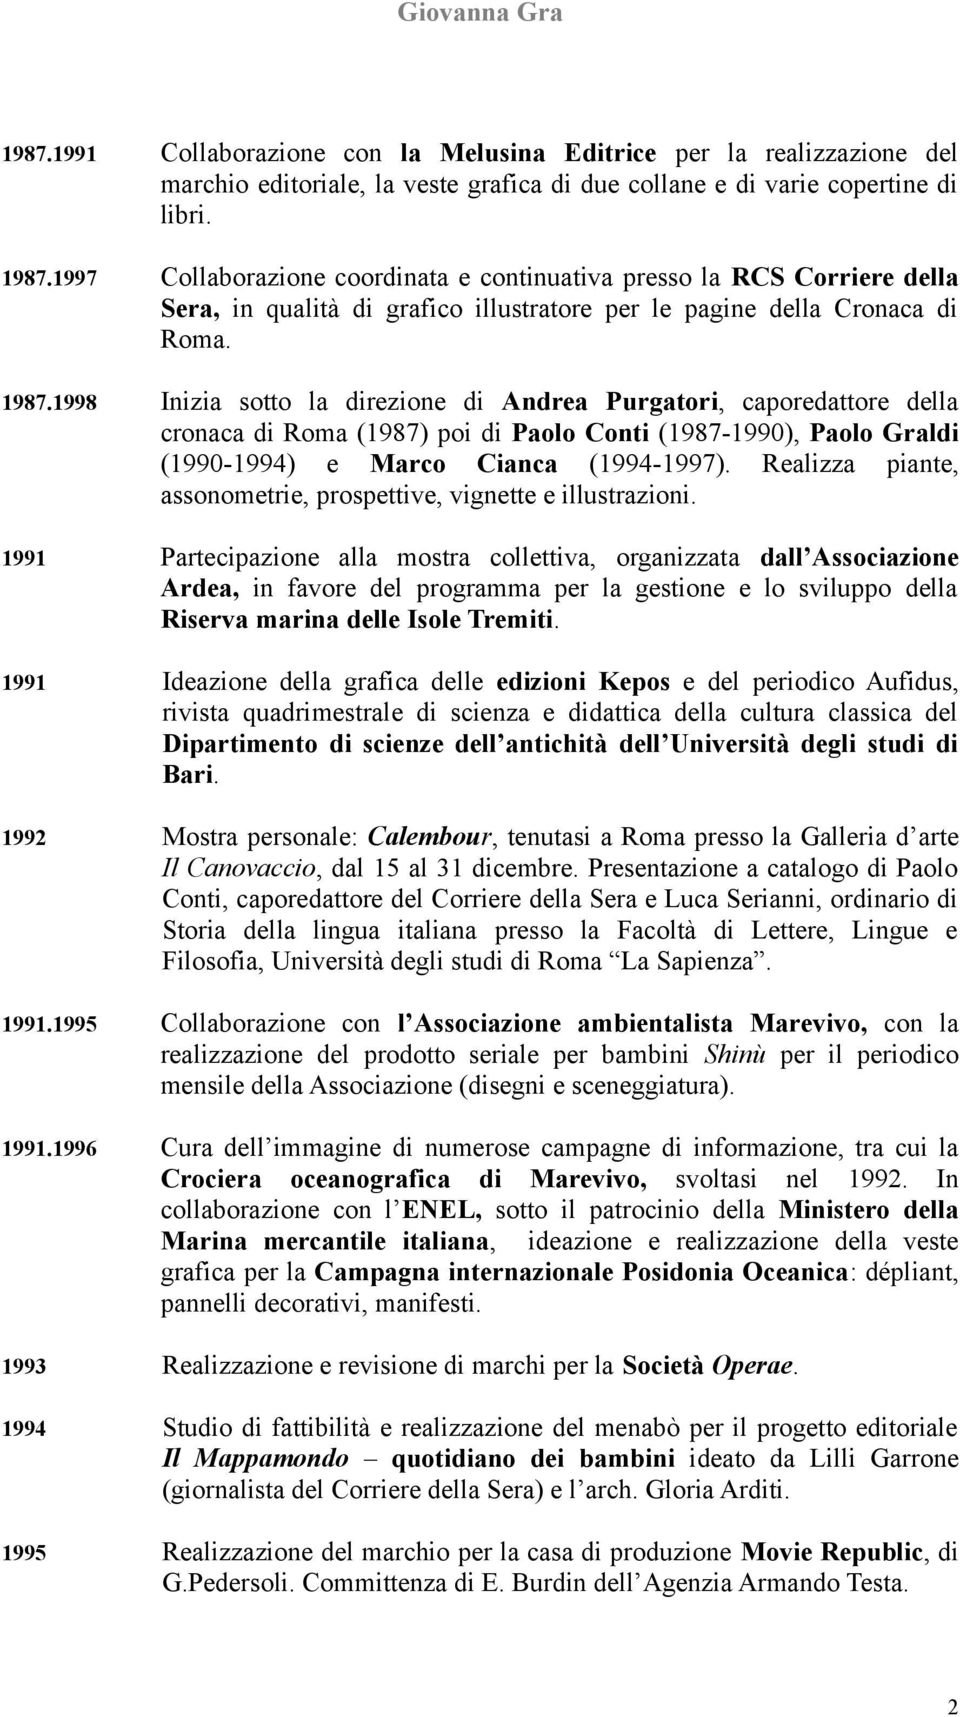 1998 Inizia sotto la direzione di Andrea Purgatori, caporedattore della cronaca di Roma (1987) poi di Paolo Conti (1987-1990), Paolo Graldi (1990-1994) e Marco Cianca (1994-1997).